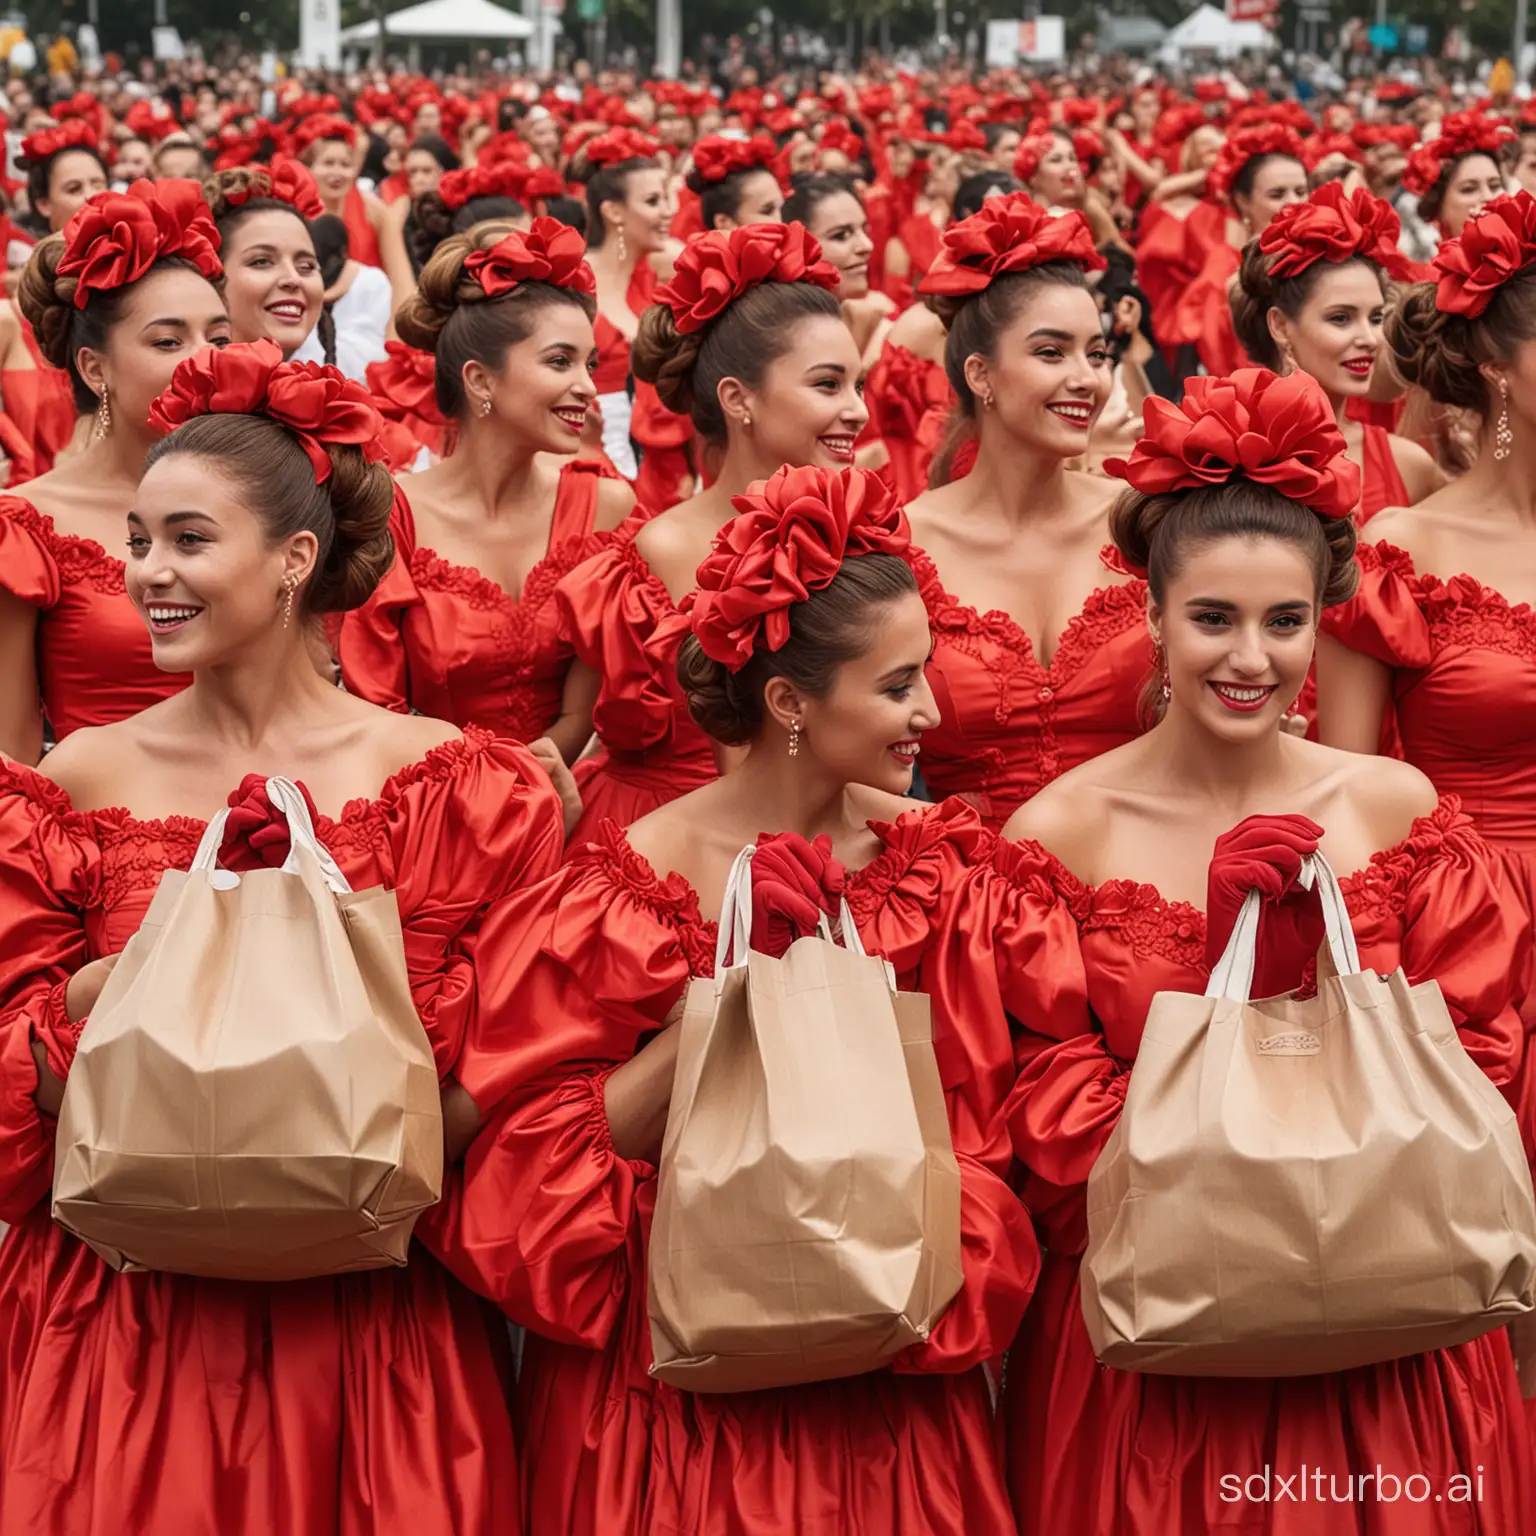 Multidão de mulheres com vestidos volumosos de gala vermelho coque na cabeça flor e luva vermelha carregando sacolas juntas no shopping interlagos